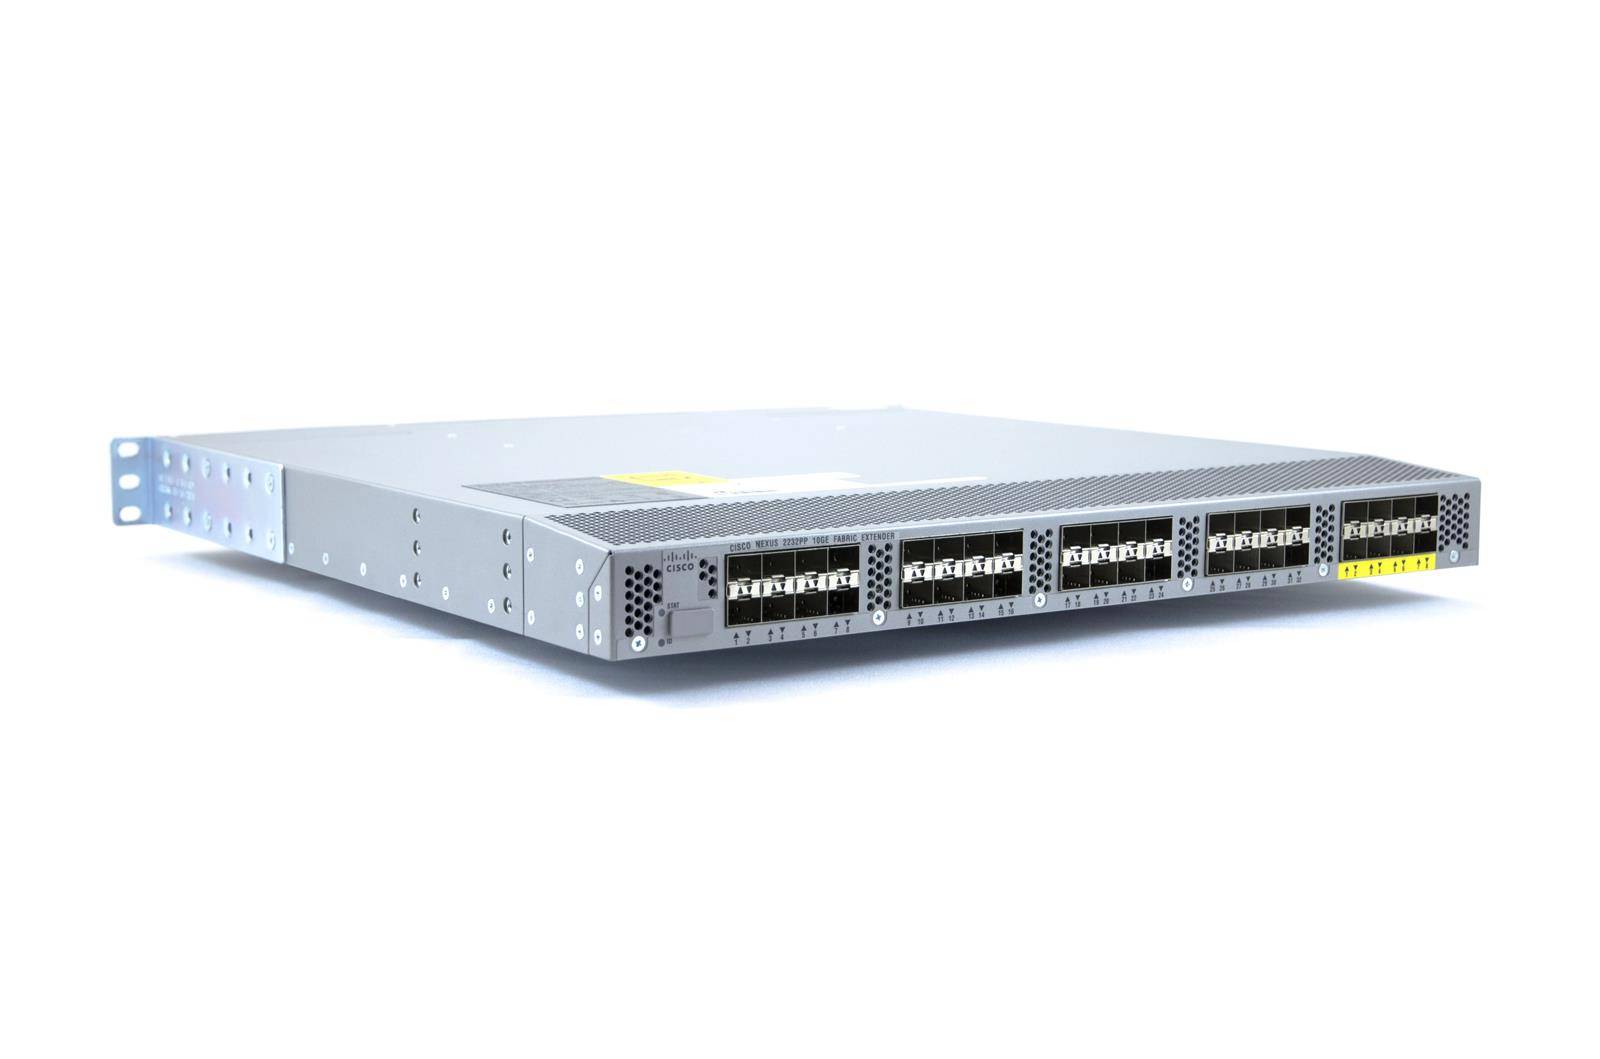 Cisco N2K 10GE, 2PS, 1 Fan Module, 32x1/10GE+8x10GE (req SFP+) N2K-C2232PP-10GE